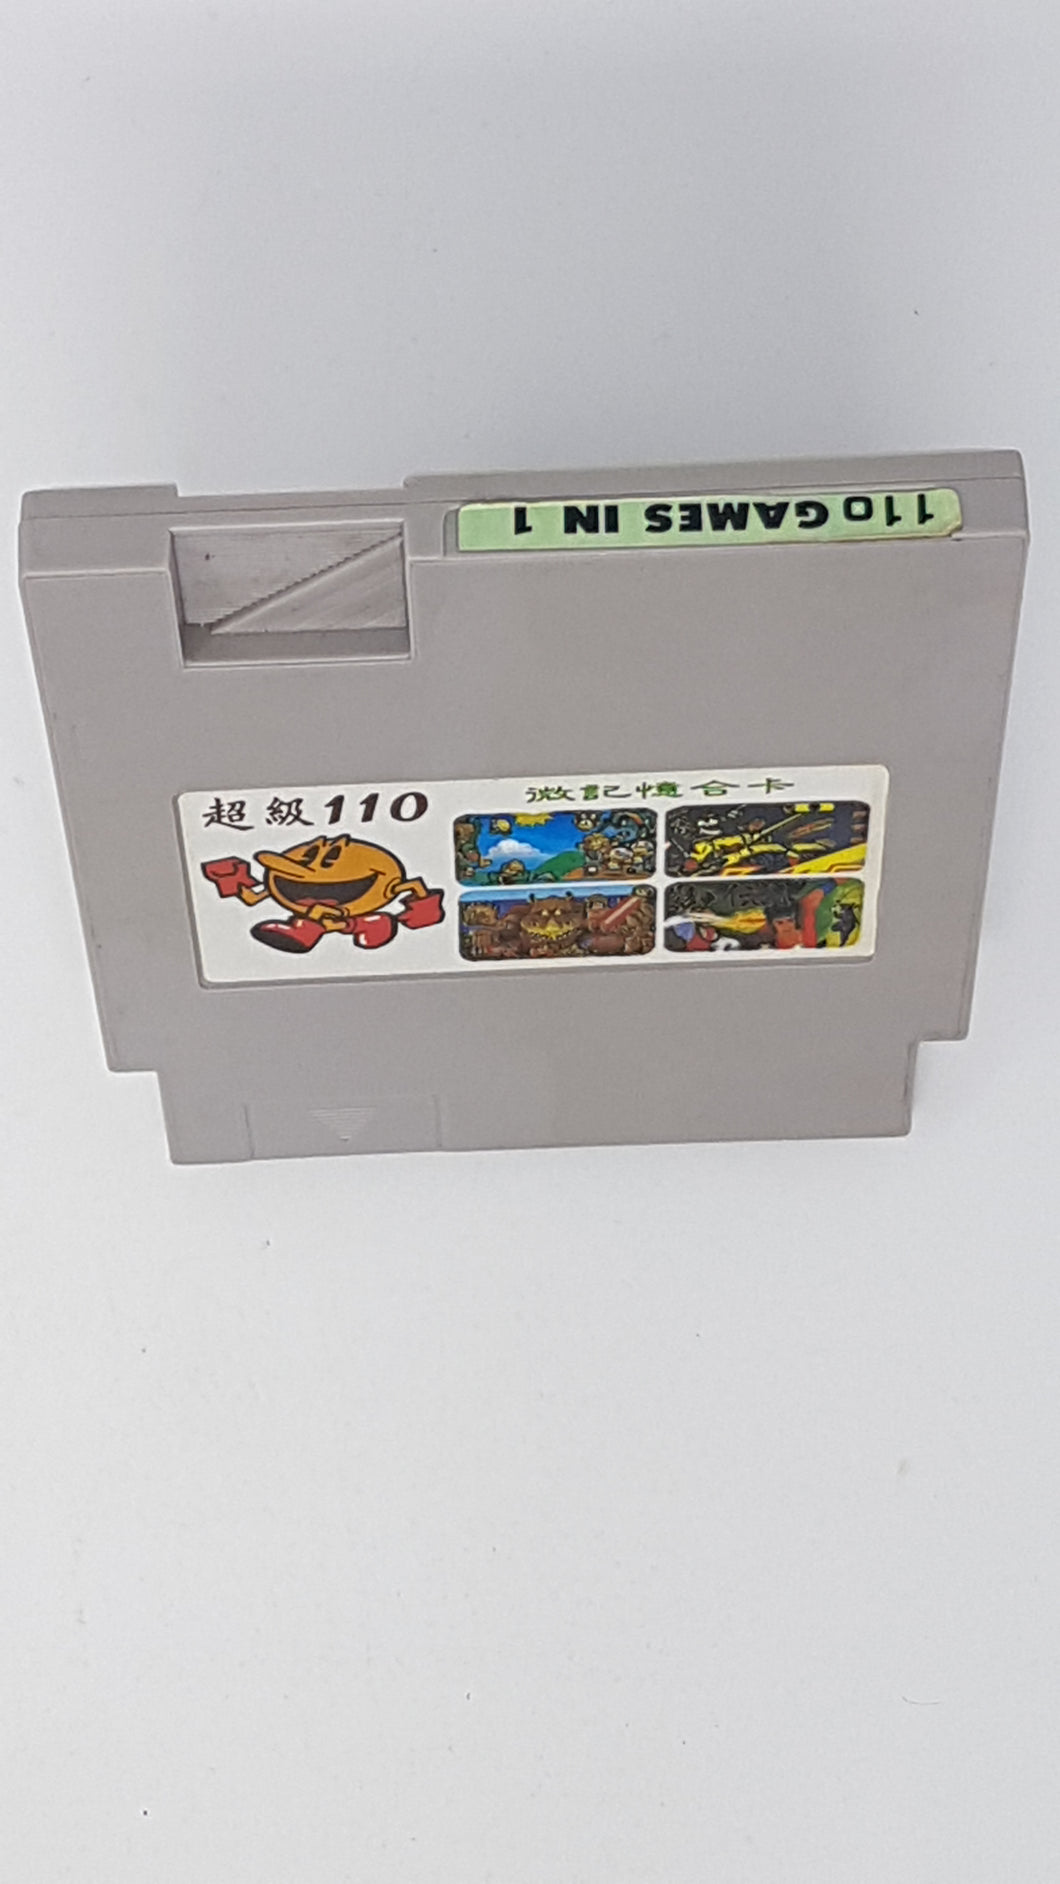 110 in 1 Multicart - Nintendo NES